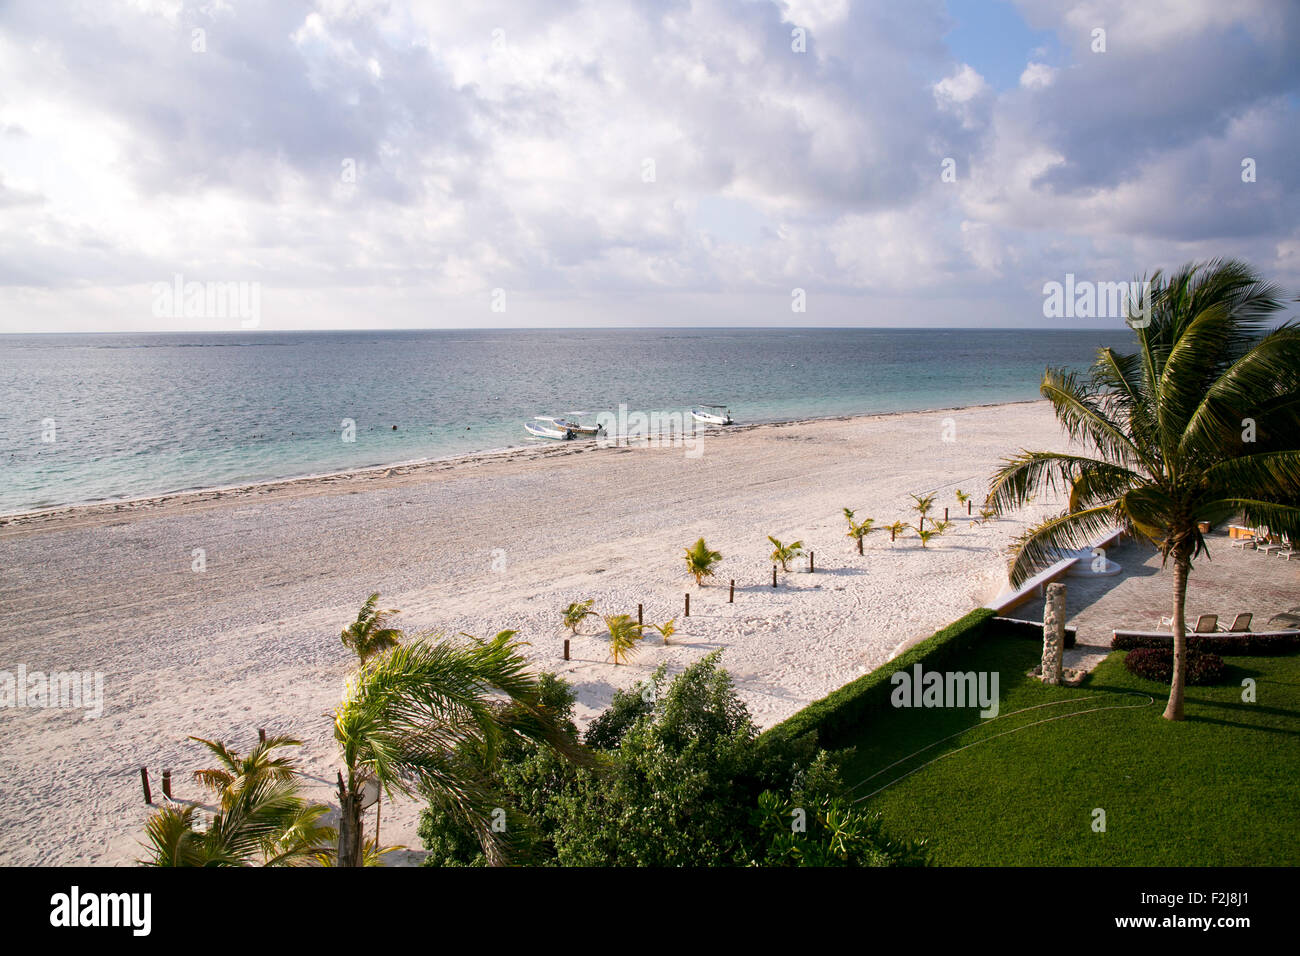 The beach in Puerto Morelos, Mexico. Stock Photo